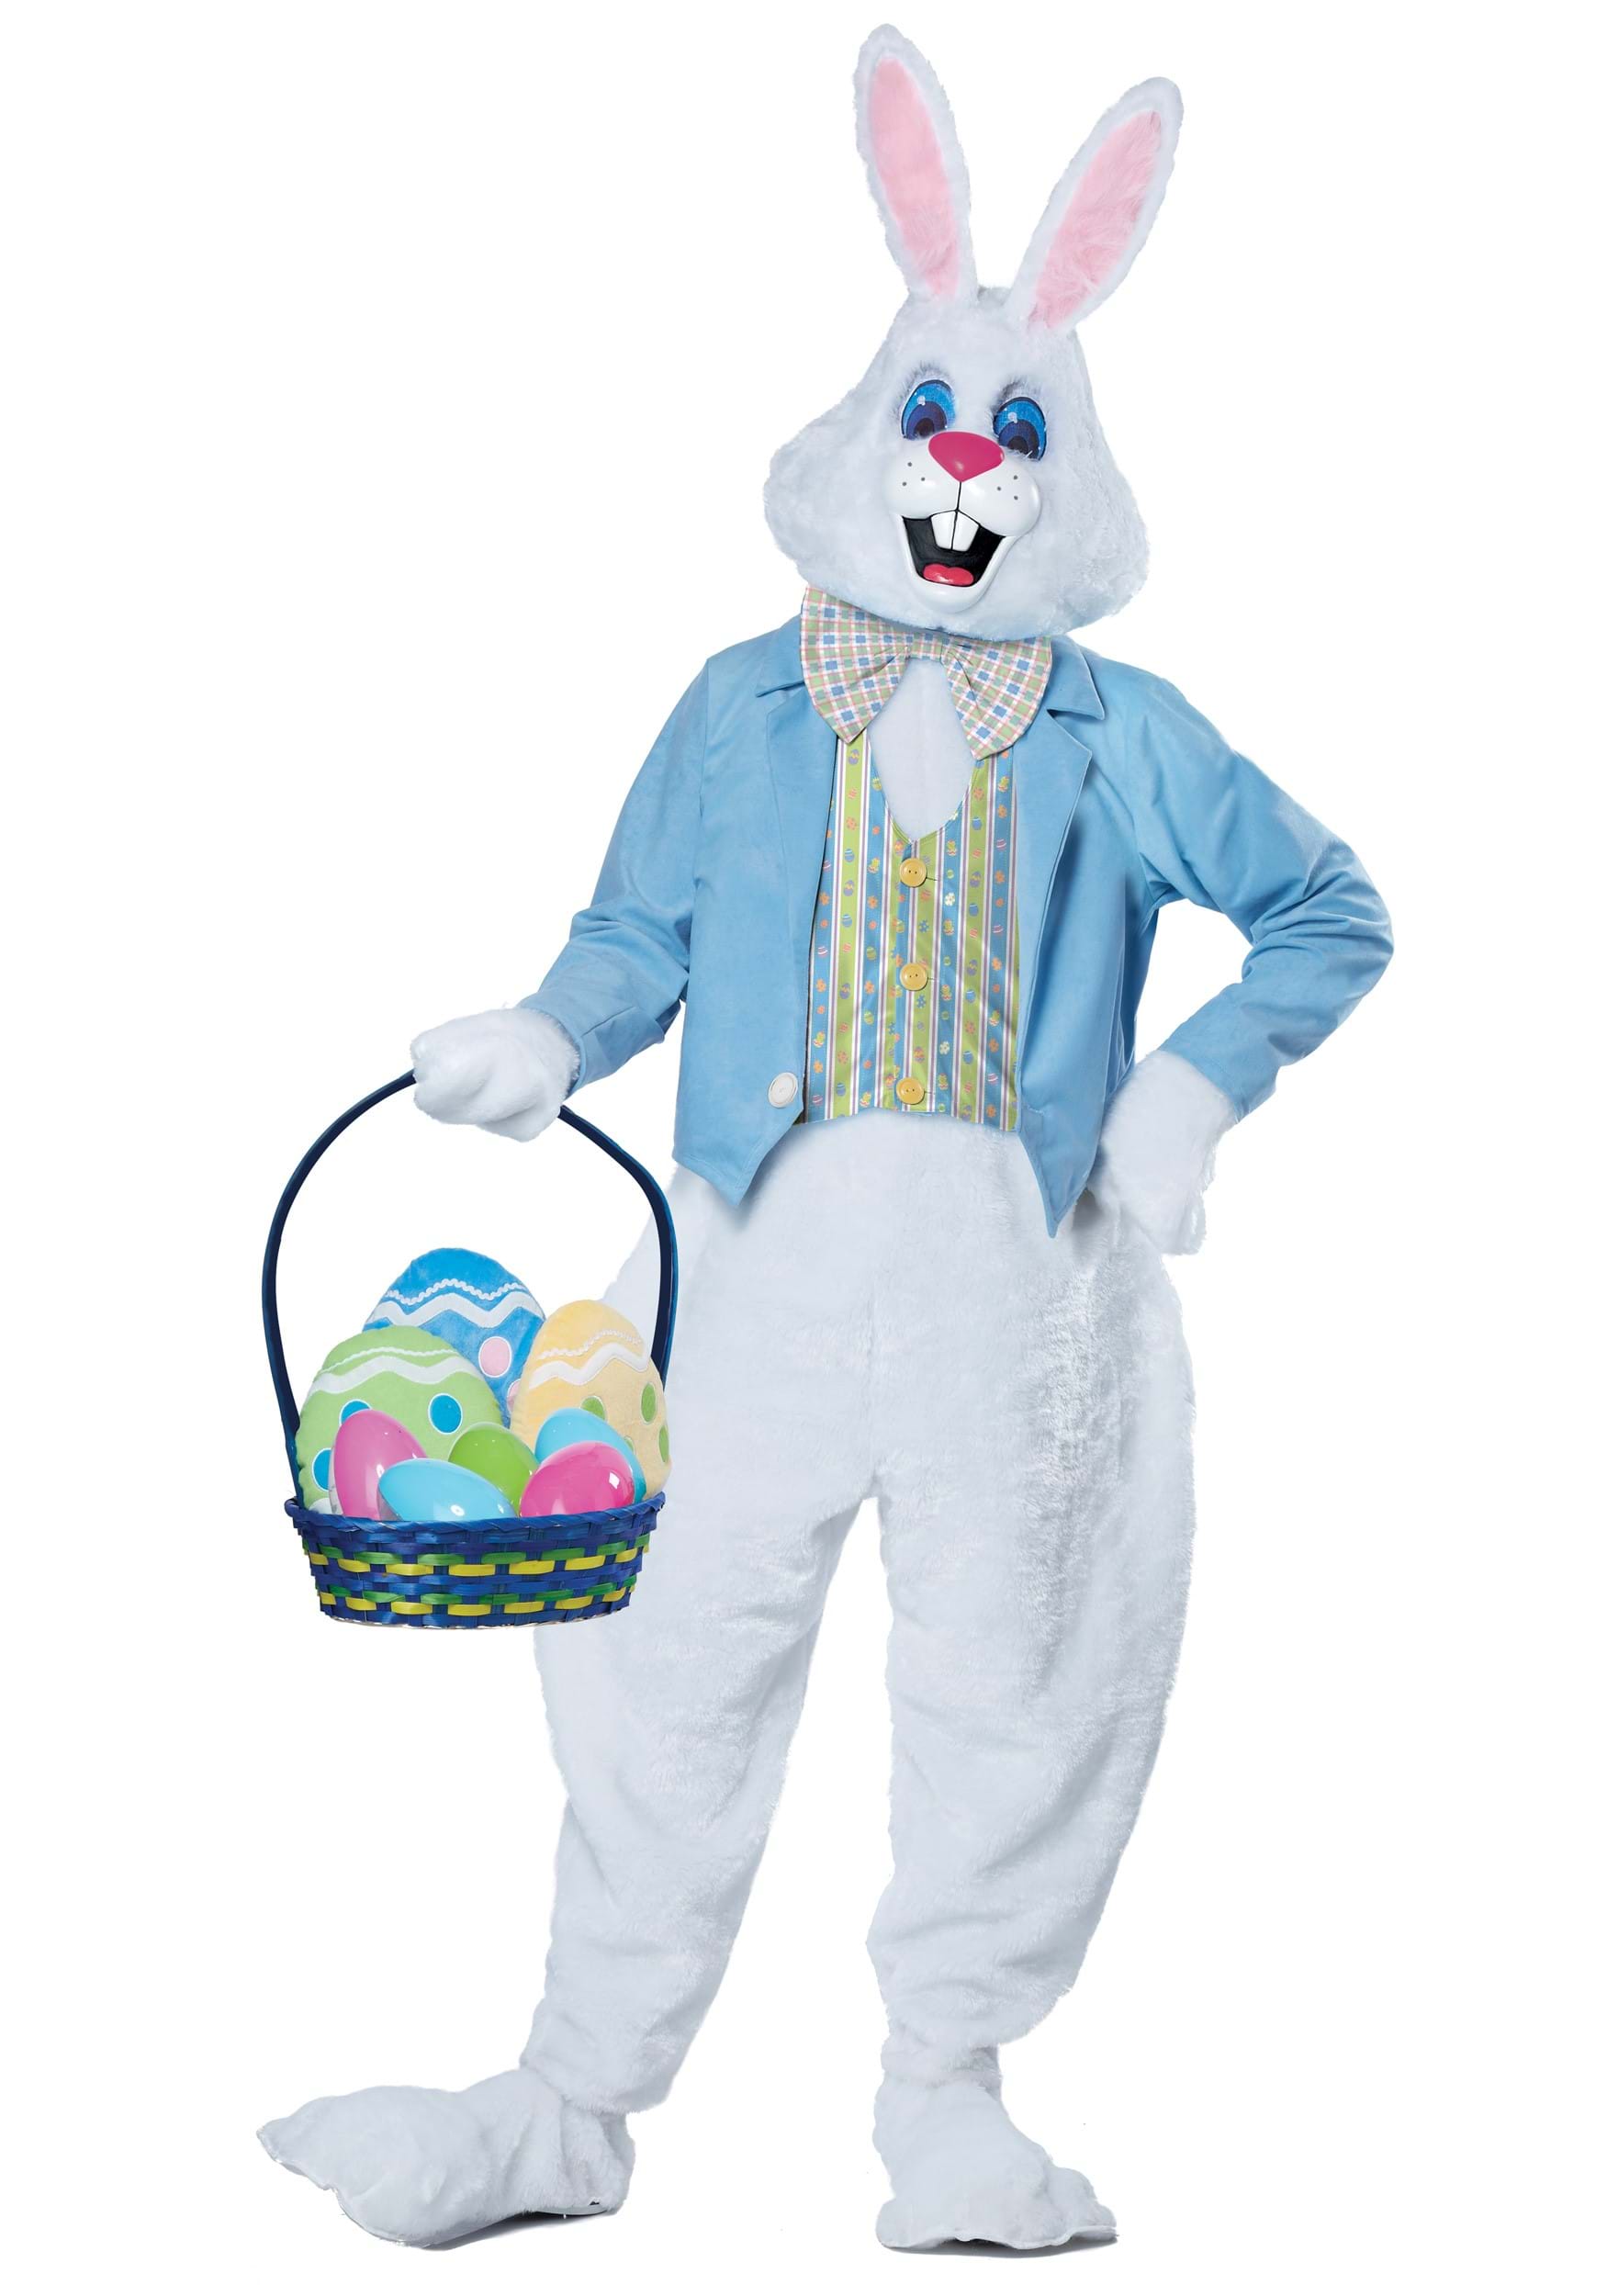 Spider-Man Easter bonnet  Holiday crafts easter, Easter bunny